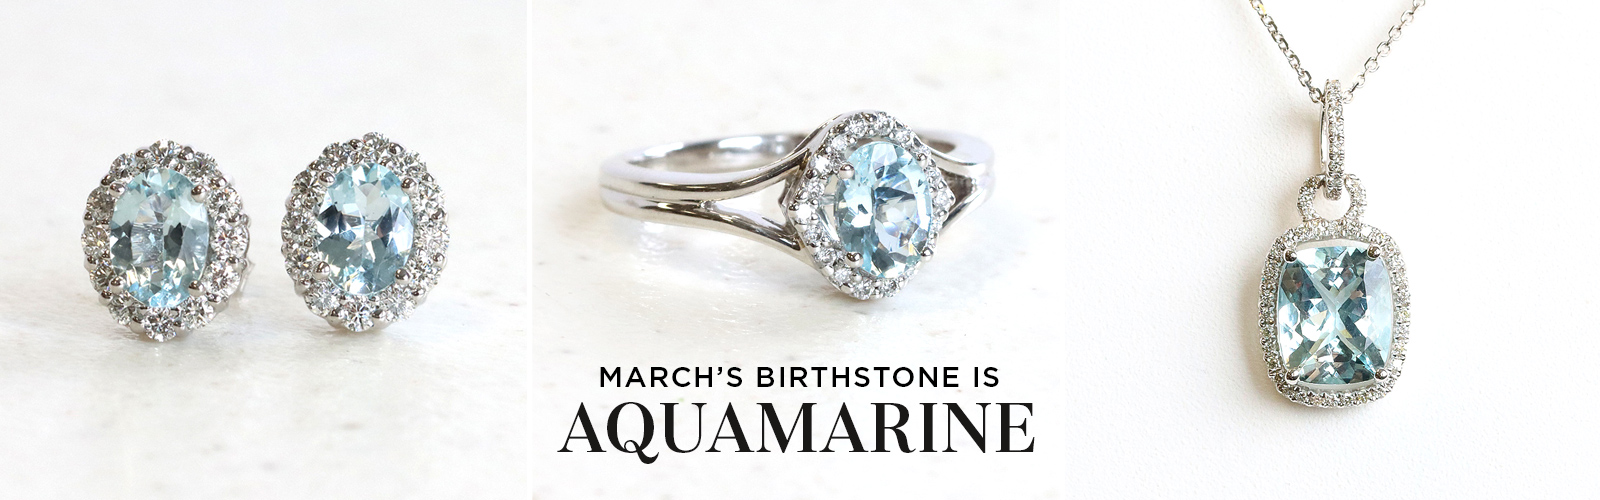 March's Birthstone - Aquamarine